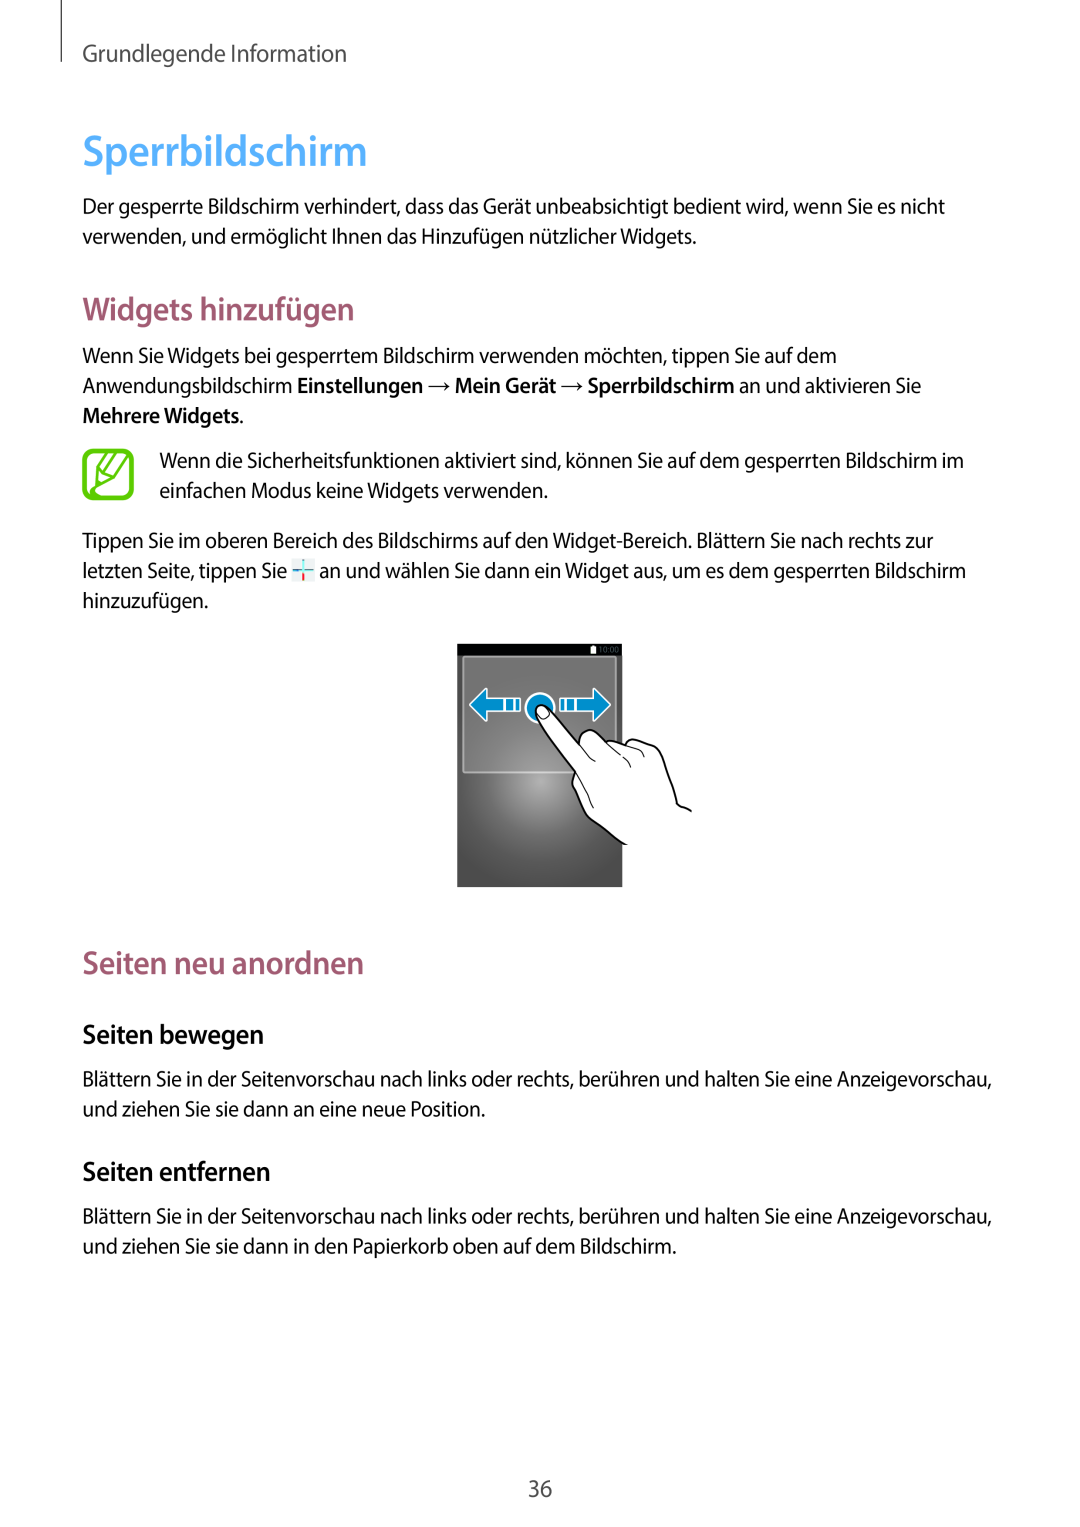 Samsung SM-C1010ZWAEUR manual Sperrbildschirm, Widgets hinzufügen, Seiten neu anordnen, Seiten bewegen, Seiten entfernen 